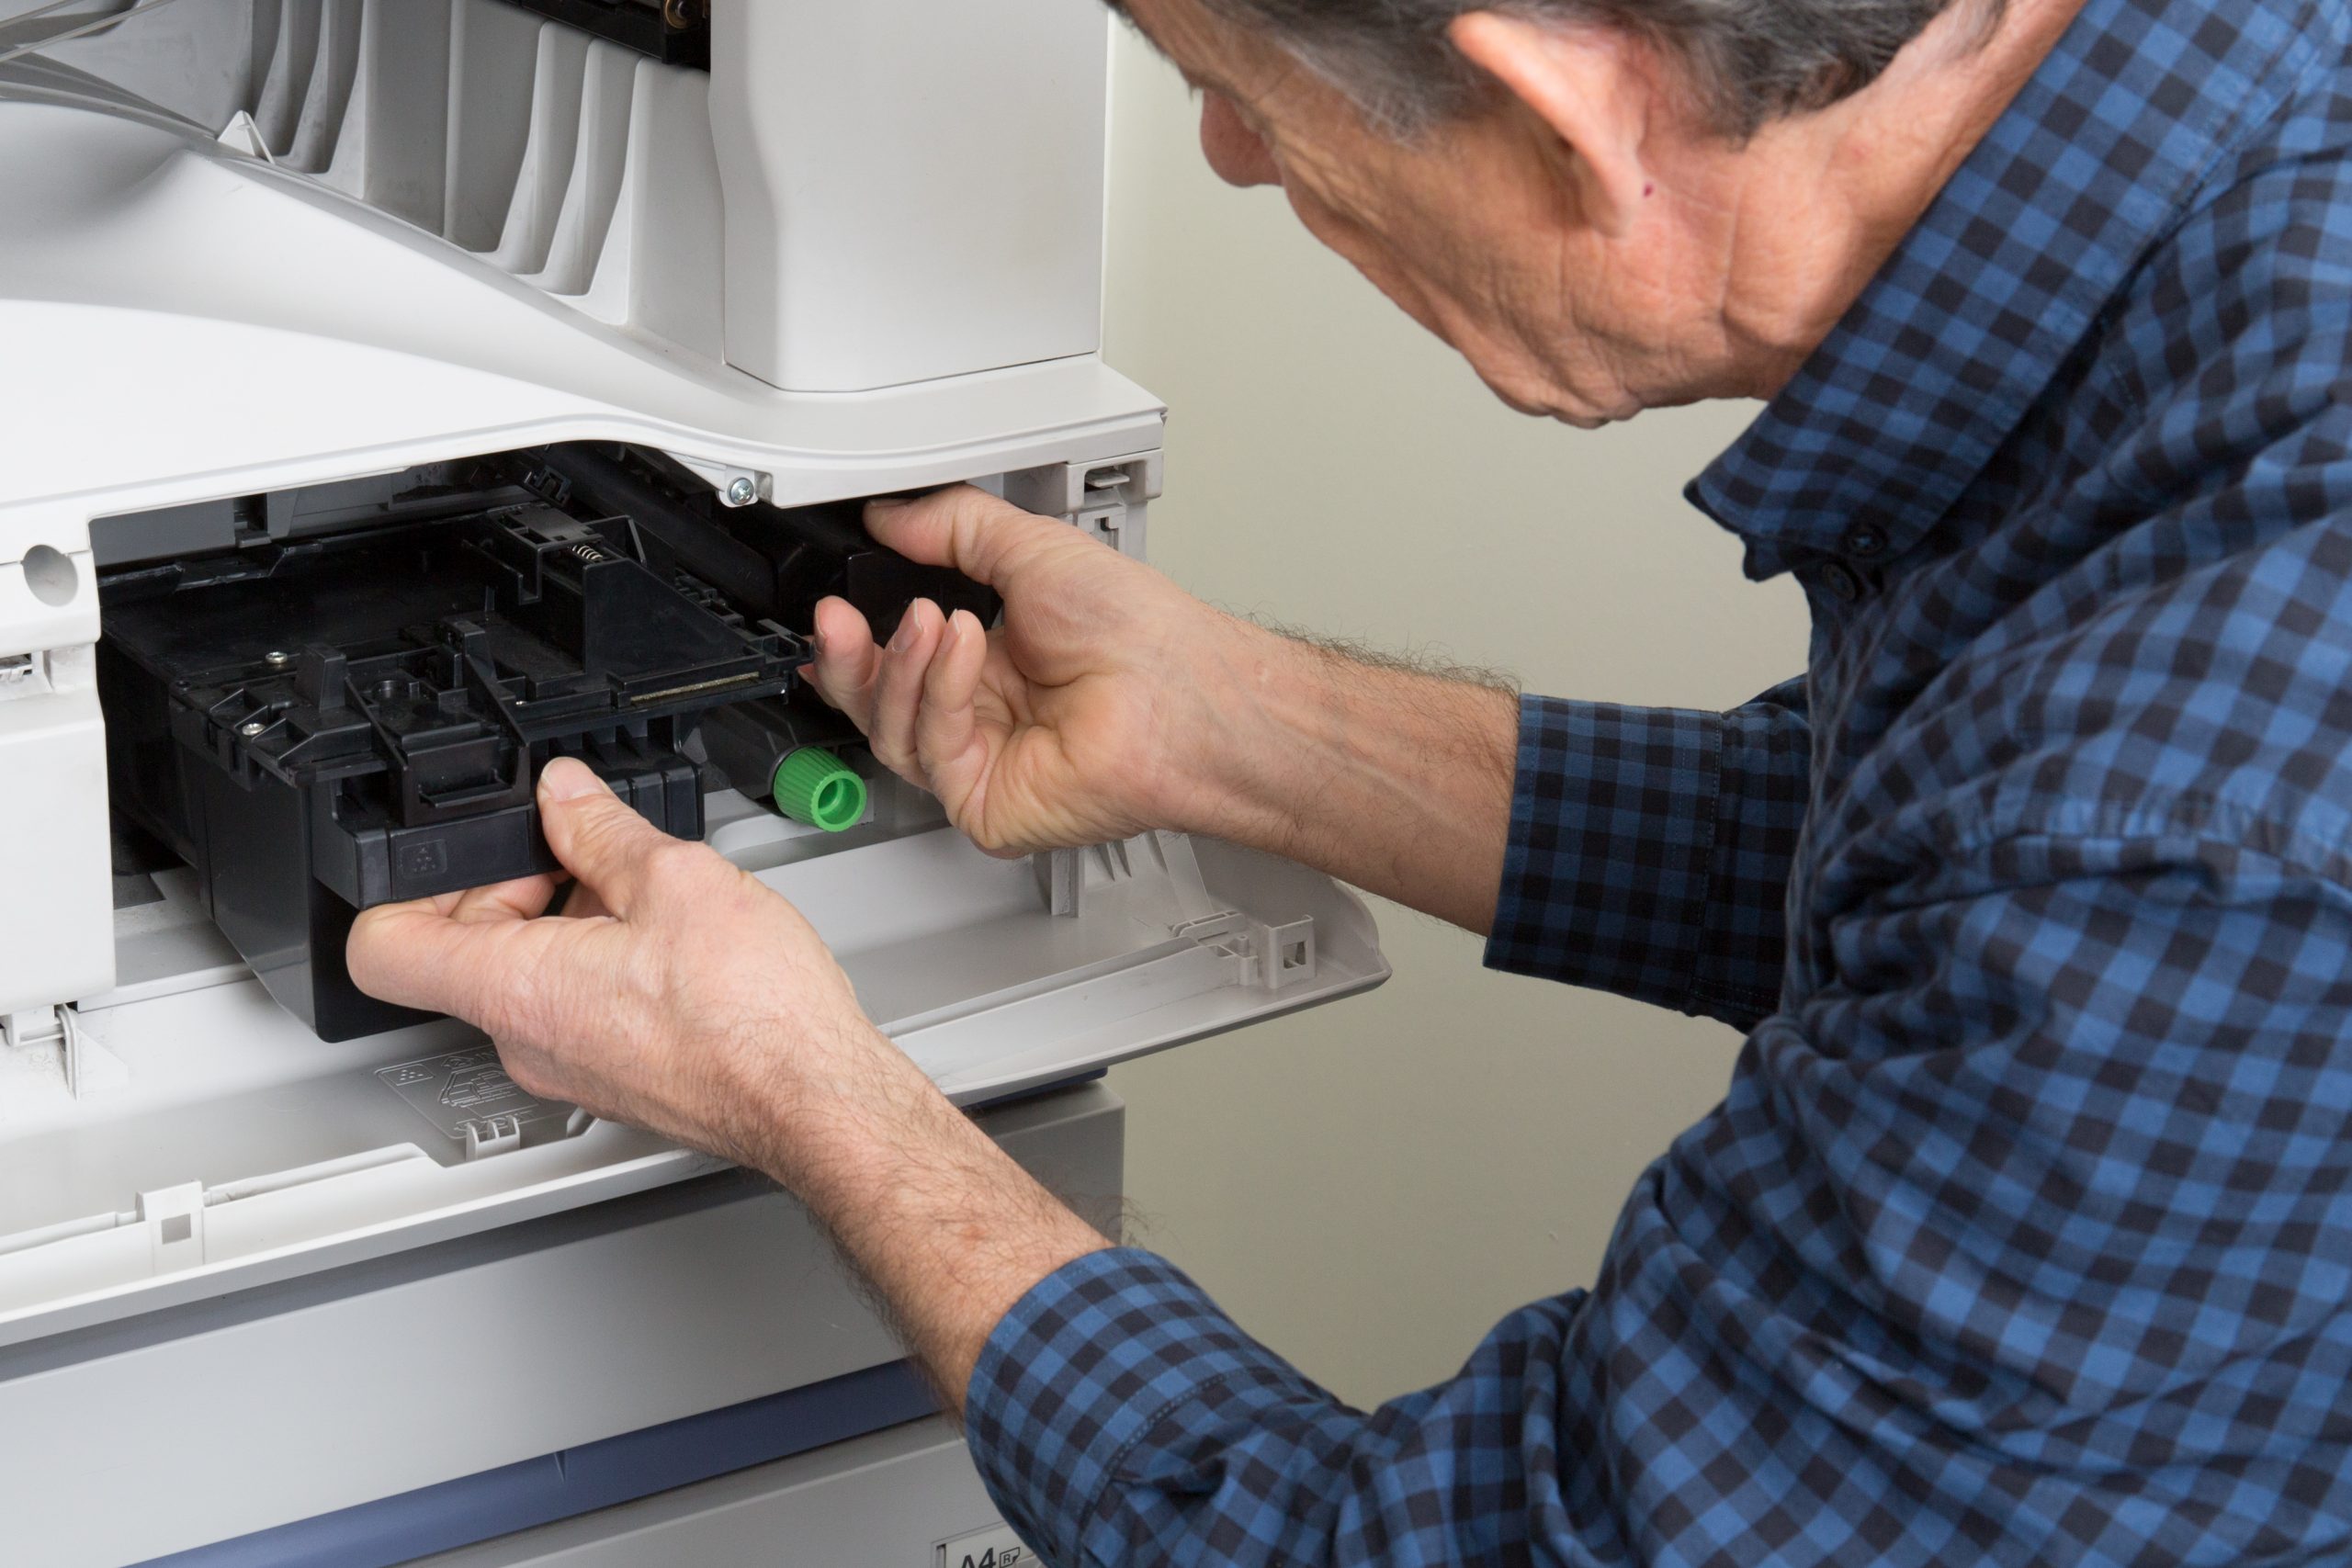 Printer Service And Repair in Dulles, VA